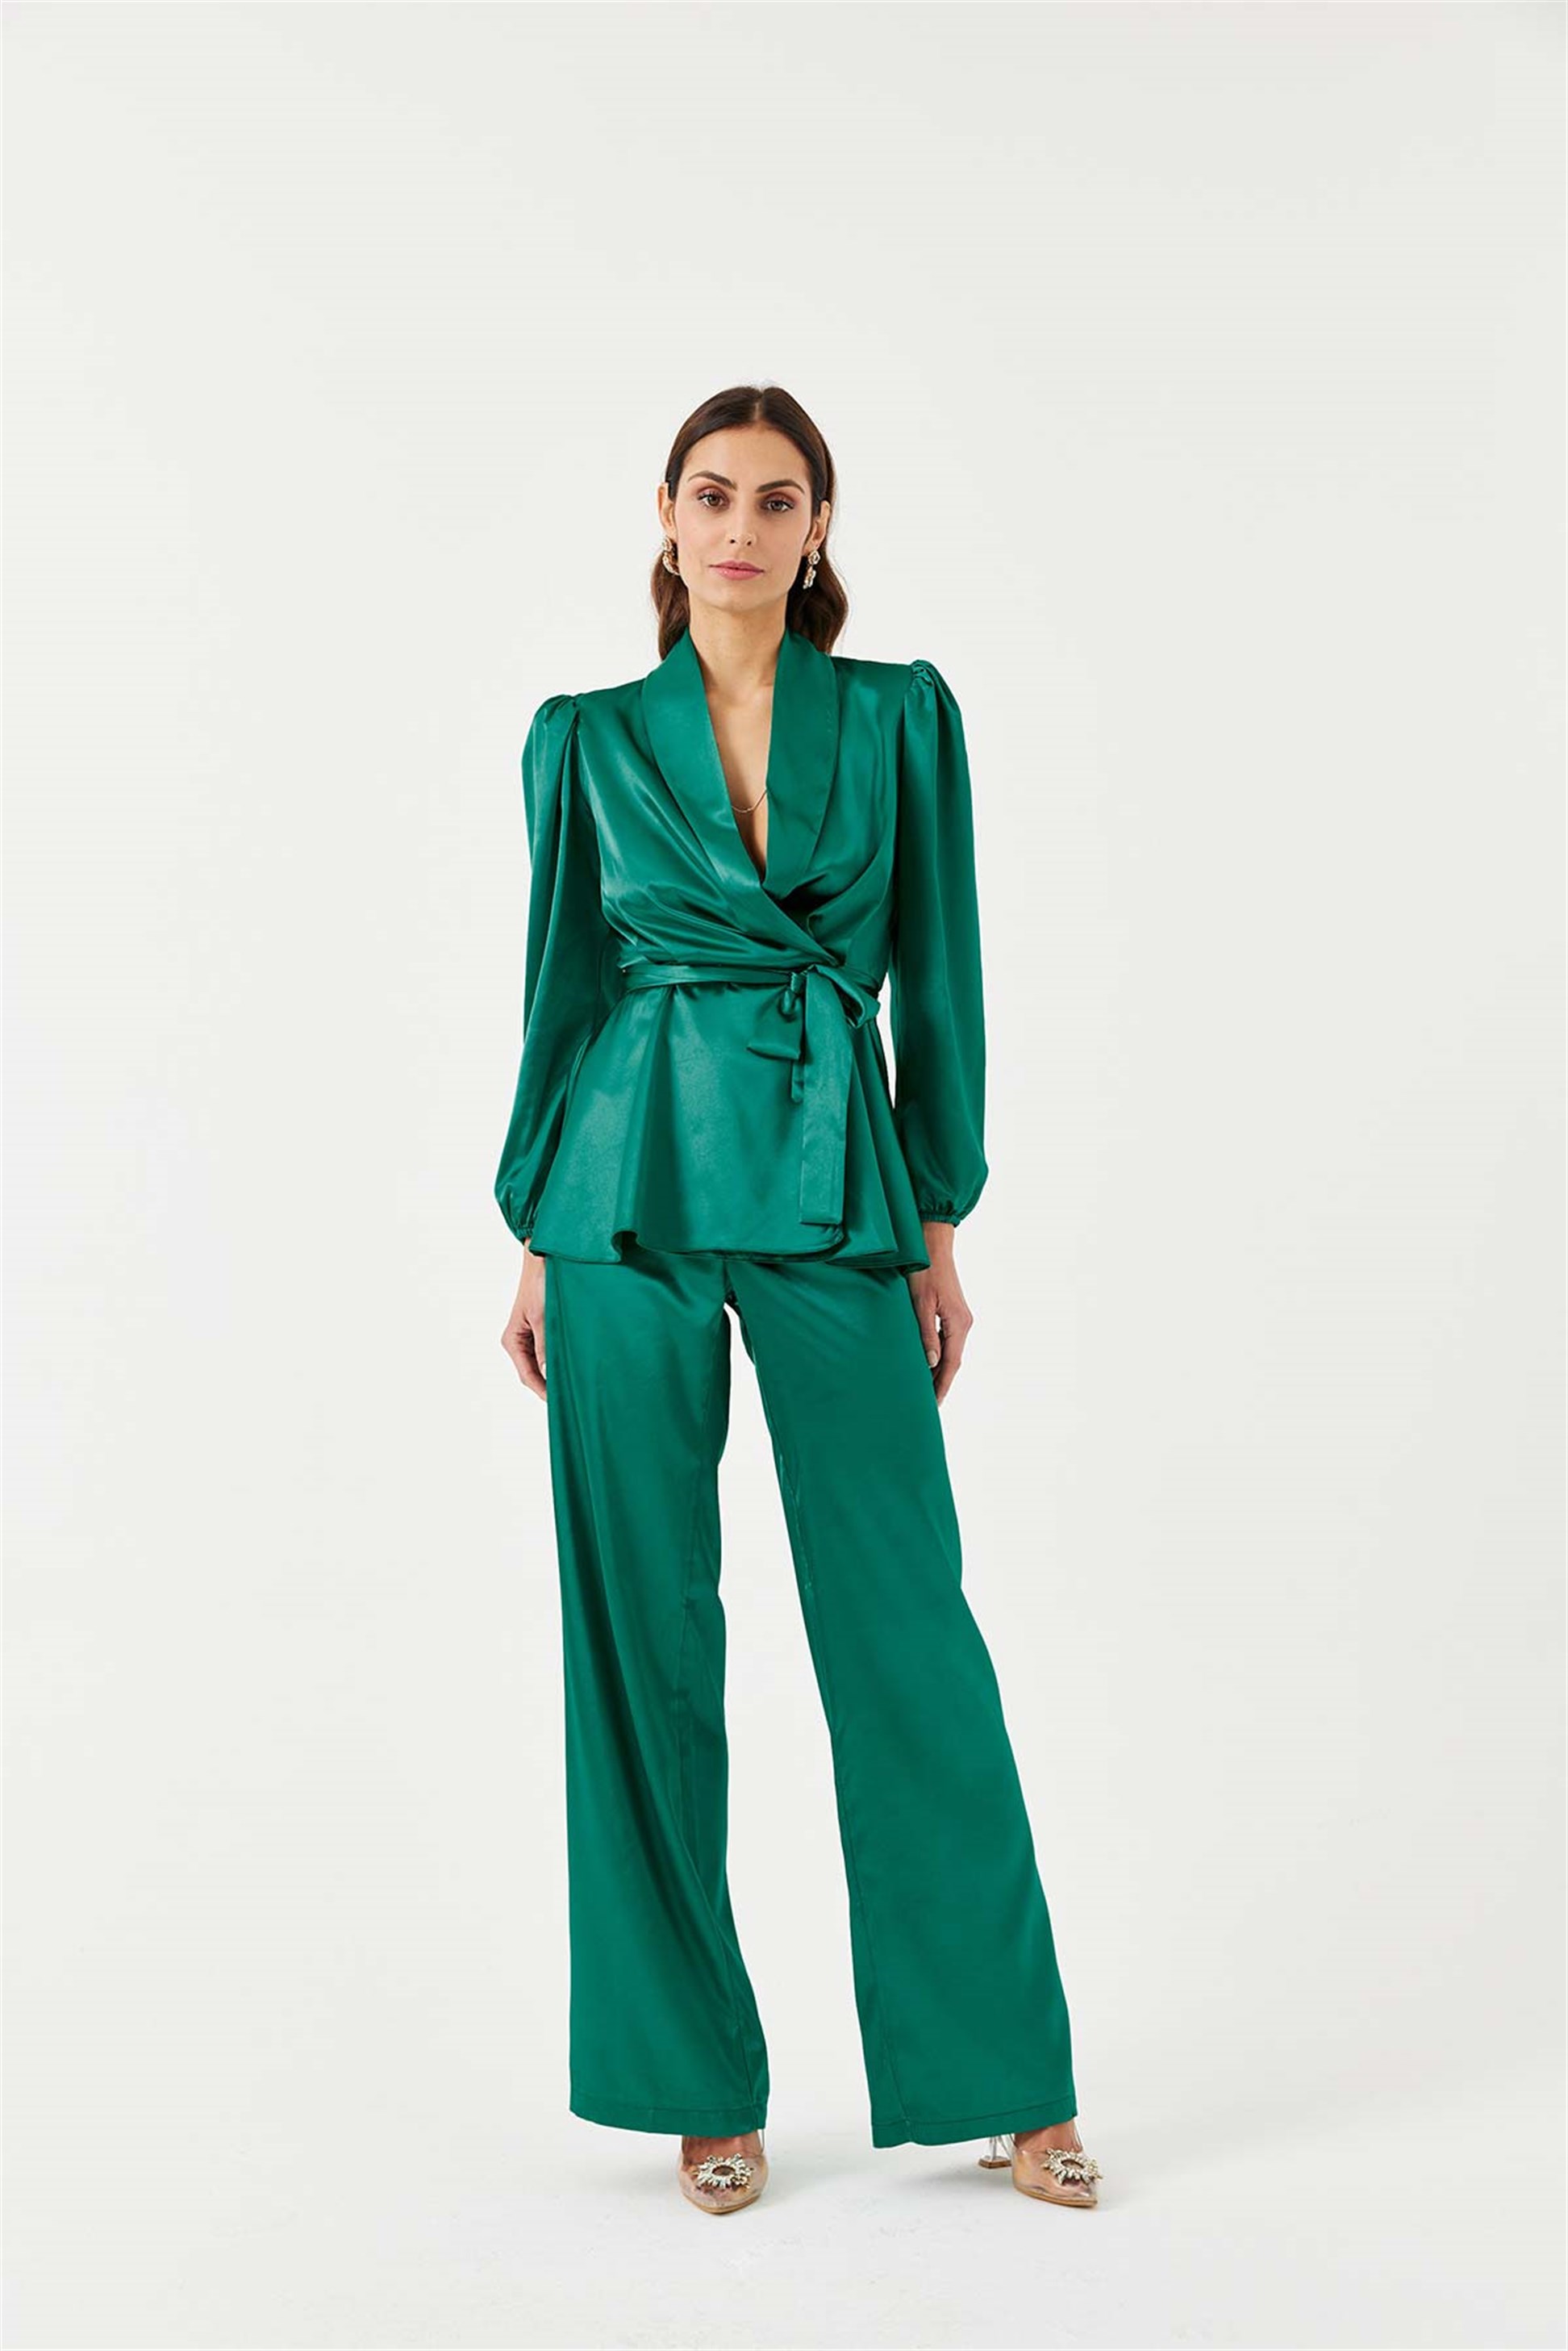 Balon Kol Saten Kuşaklı Ceket Pantolon Zümrüt Yeşil Kadın Takım | Tuba Butik